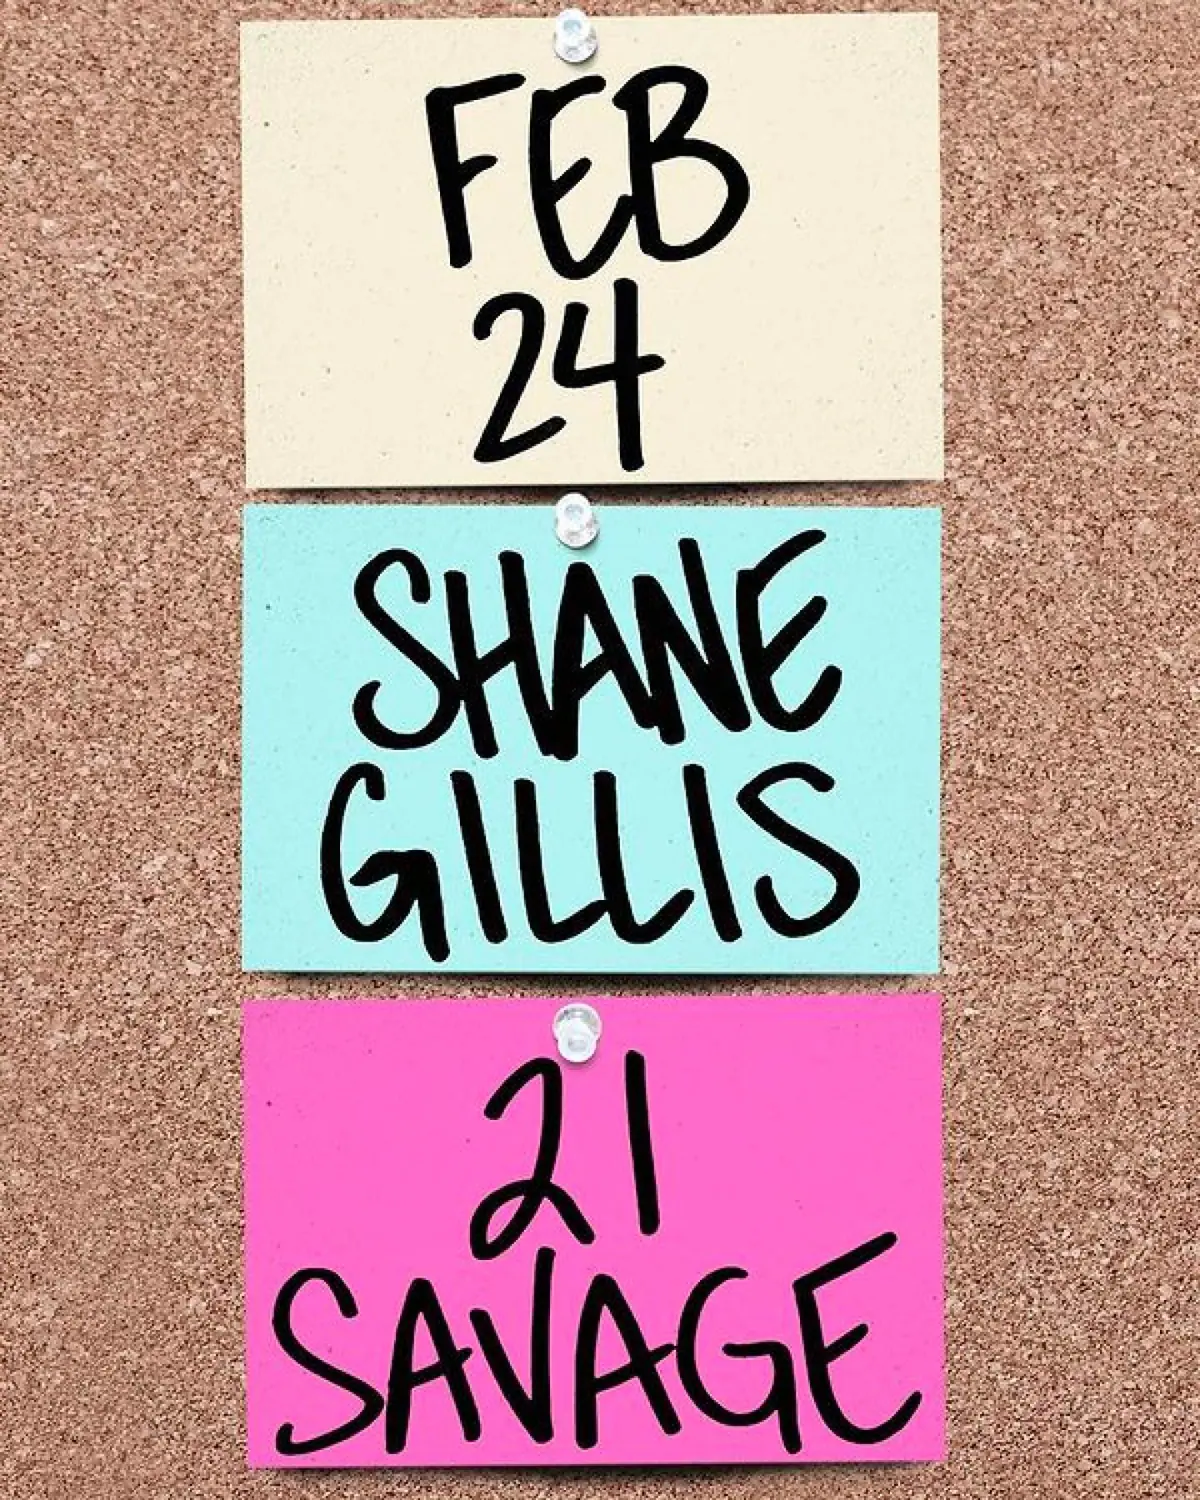 Shane Gillis SNL host promo image